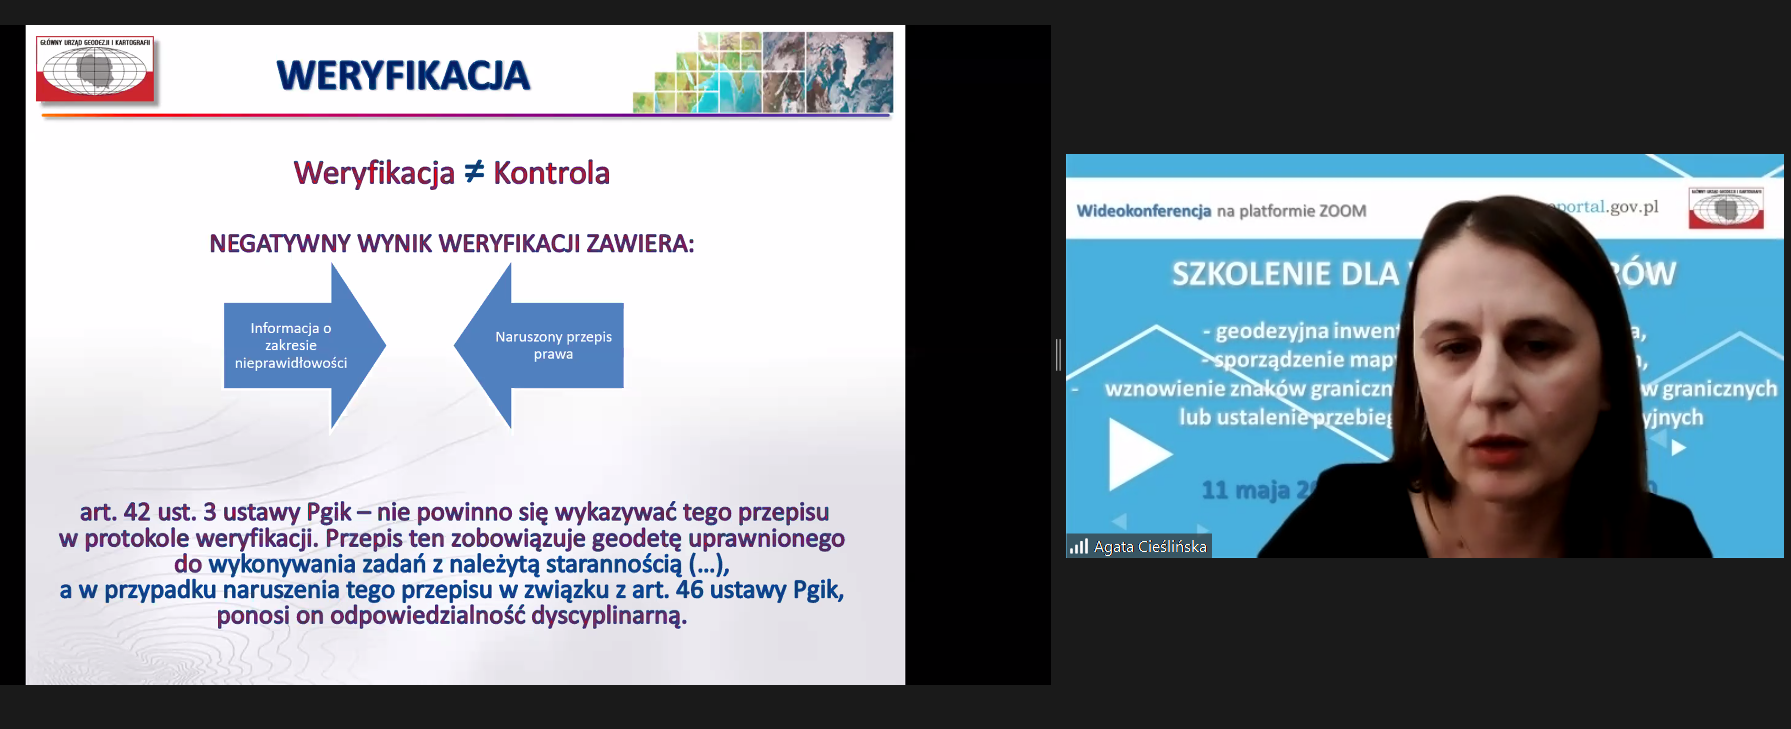 Zrzut ekranu z programu ZOOM. Po lewej fragment prezentacji podczas wideokonferencji "Szkolenie dla weryfikatorów", a po prawej Agata Cieślińska - pracownik GUGiK podczas prezentacji.